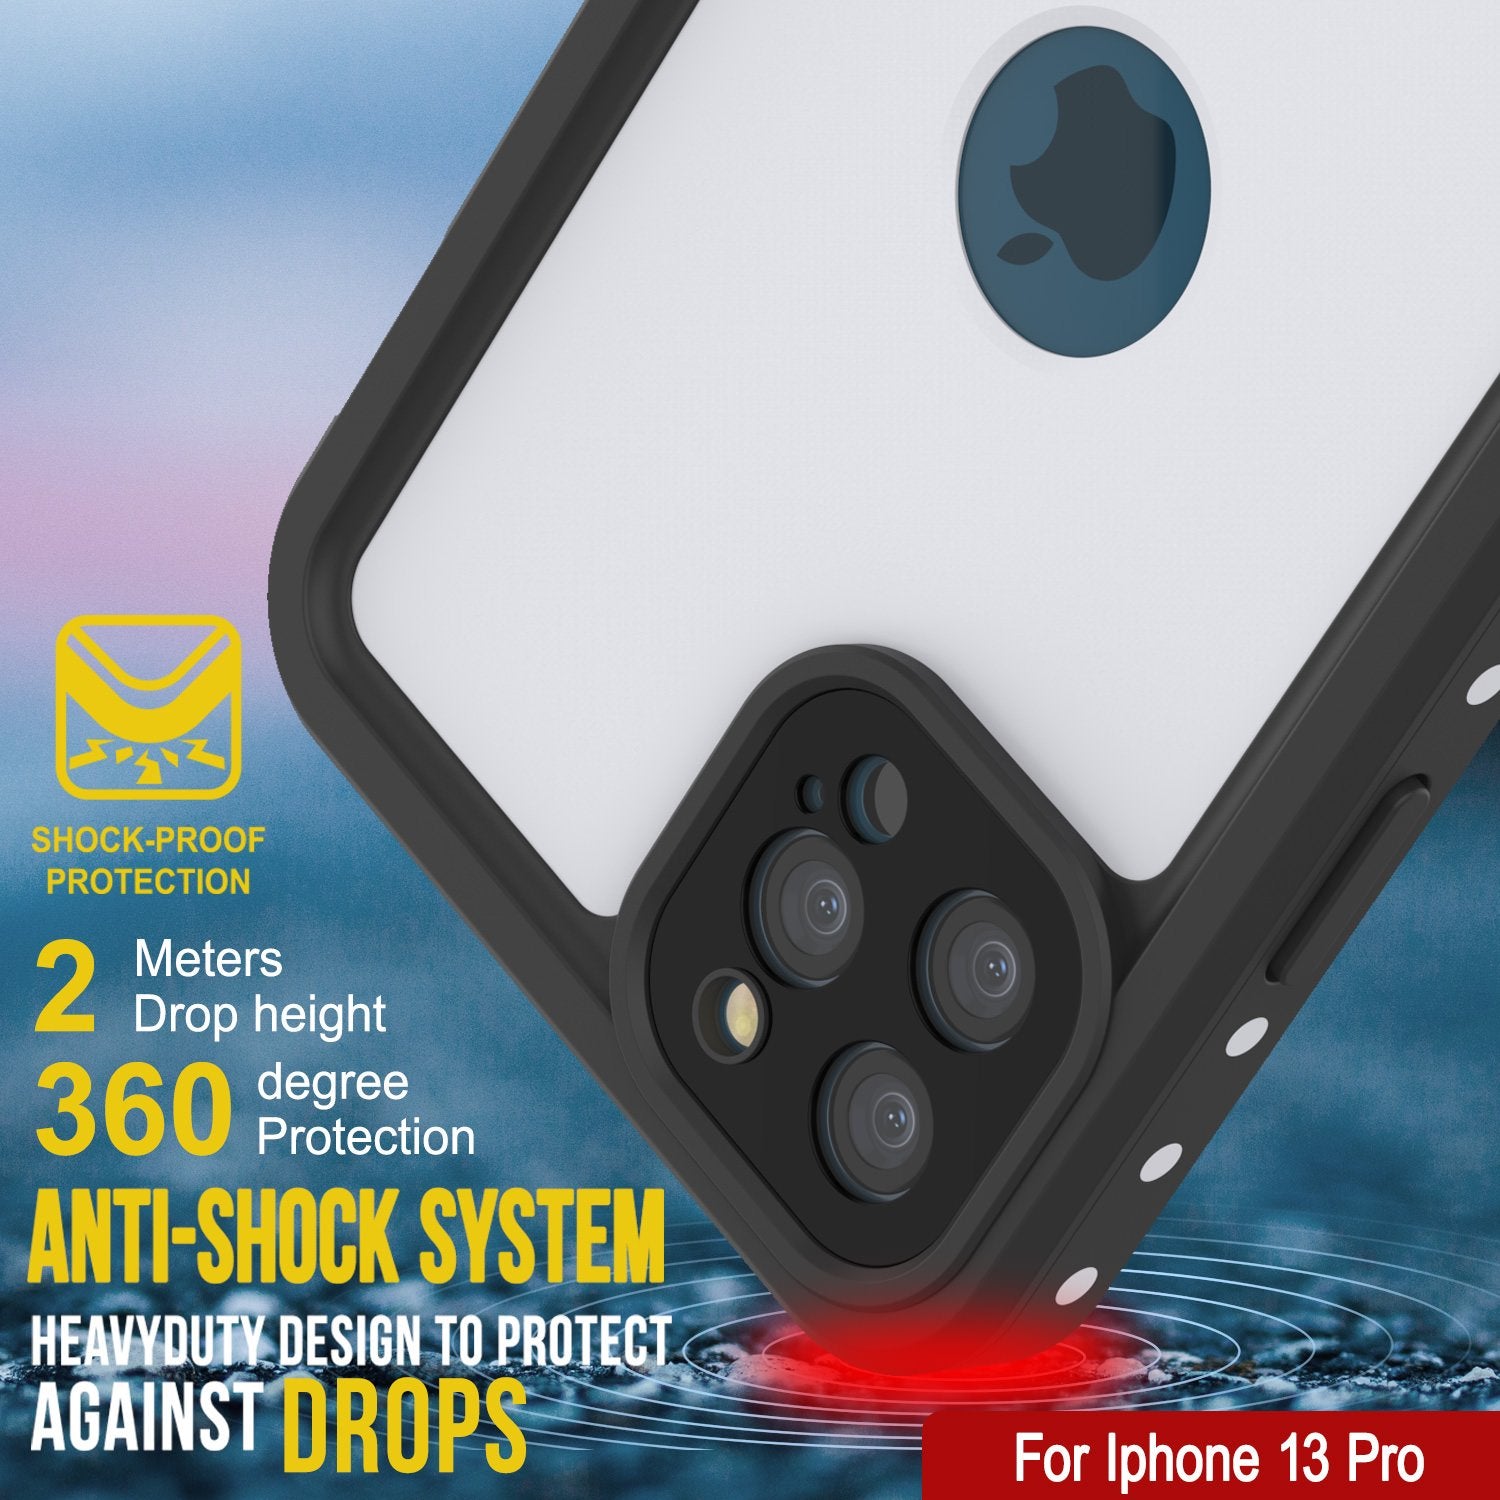 iPhone 13 Pro Waterproof IP68 Case, Punkcase [White] [StudStar Series] [Slim Fit] [Dirtproof]